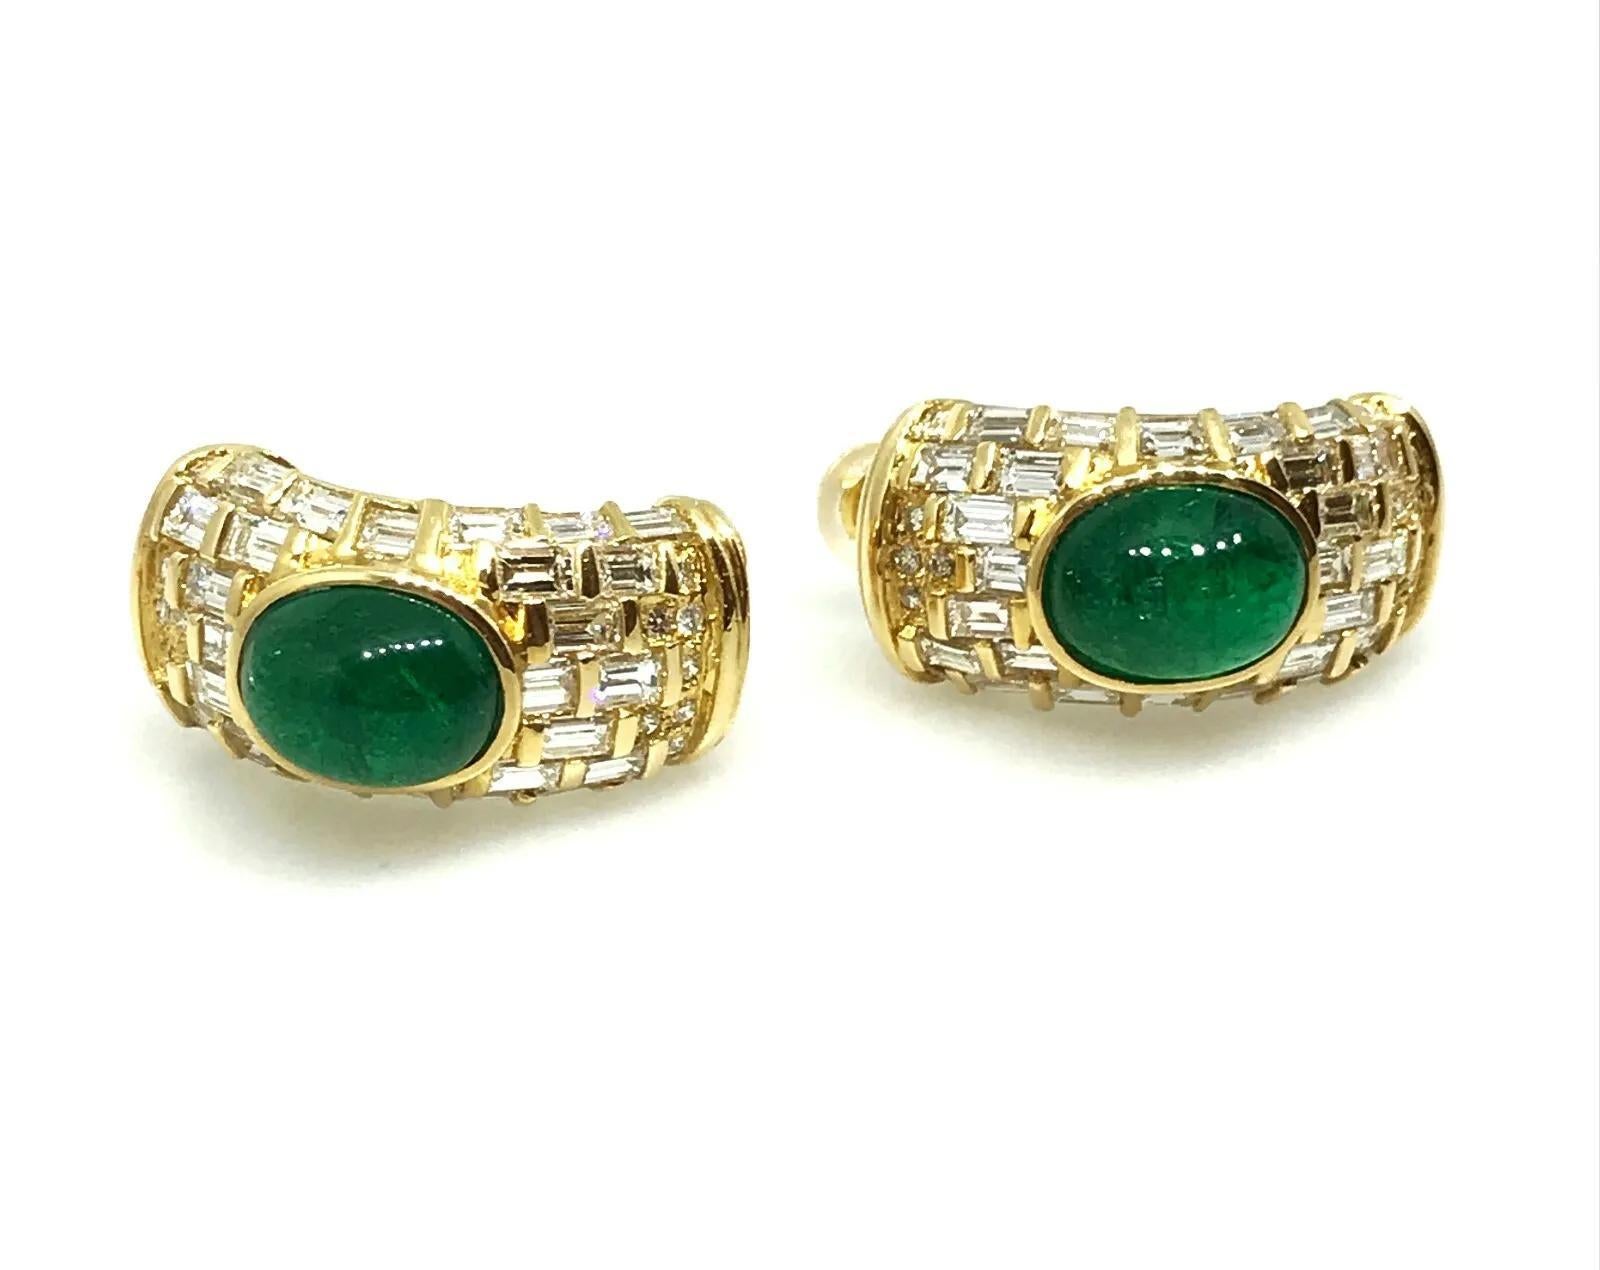 Smaragd-Cabochons und Diamant-Ohrringe mit 2 ovalen Smaragd-Cabochons in der Mitte, akzentuiert von 60 Baguettes und 22 runden Brillanten, gefasst in 18 Karat Gelbgold. Die Ohrringe haben einen Ohrstecker für gepiercte Ohren.

Das Gesamtgewicht des